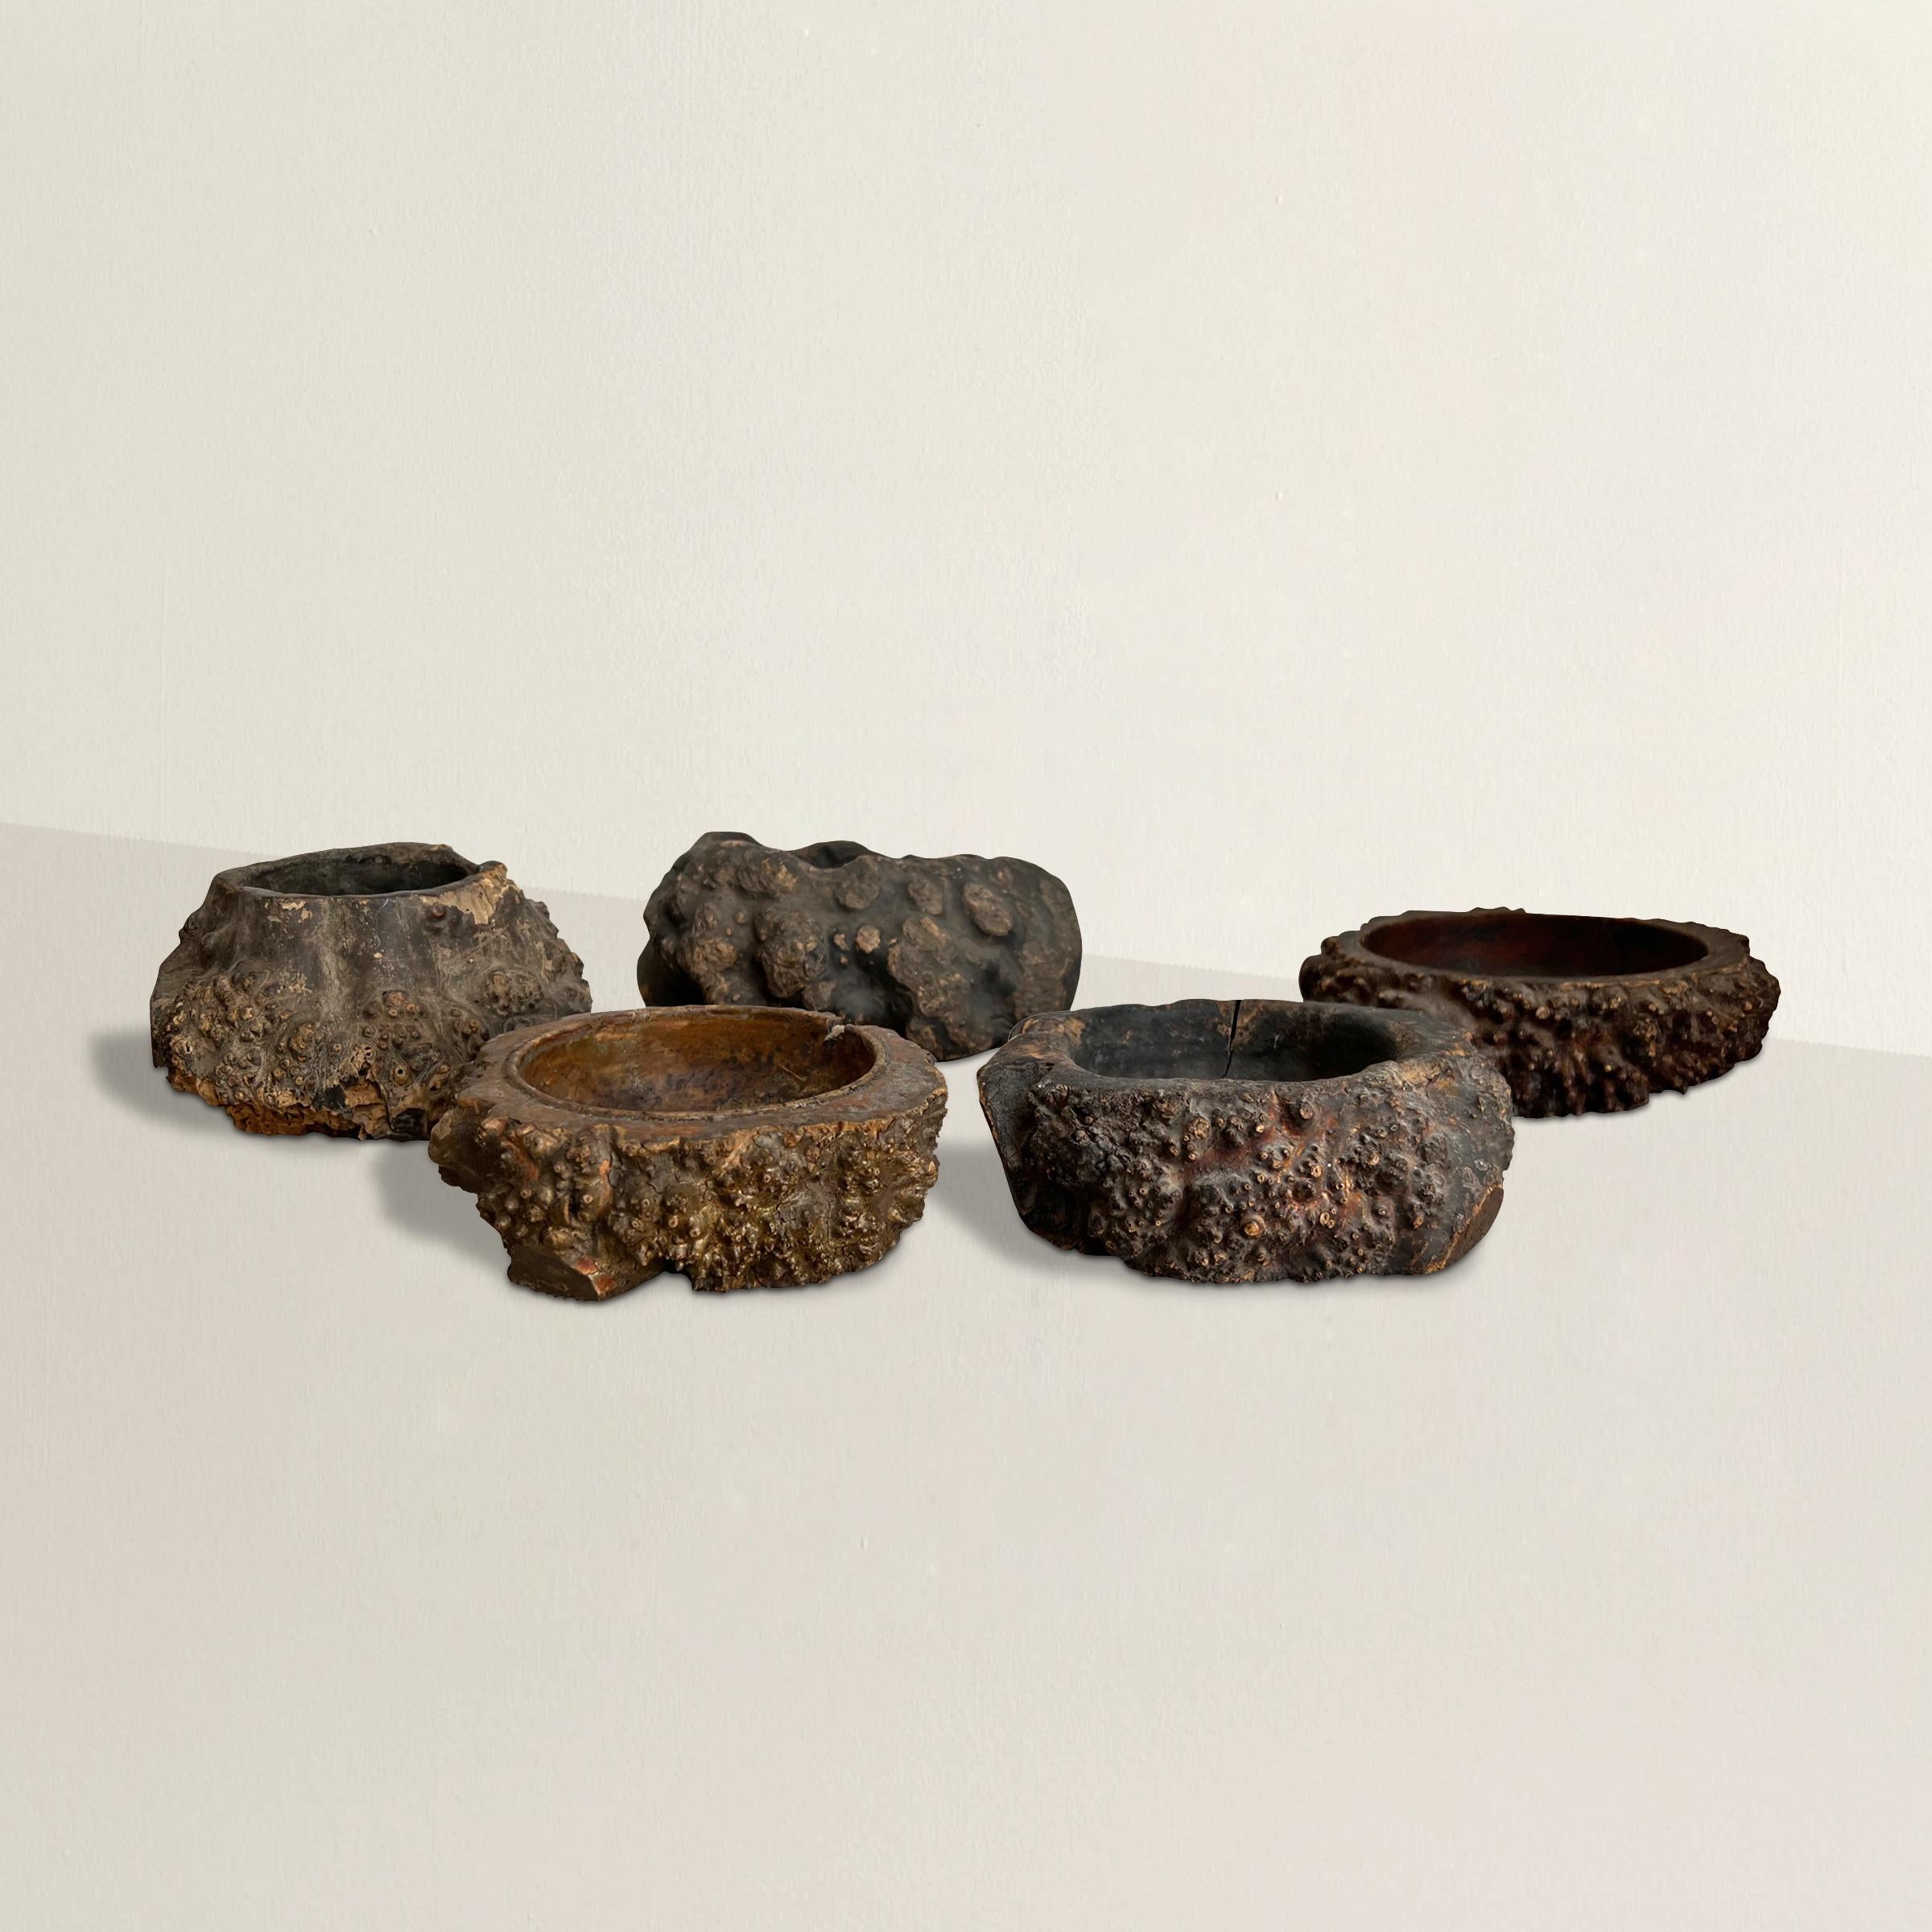 Eine bemerkenswerte und seltene Sammlung von fünf chinesischen Wabi-Sabi-Bürstenscheiben aus Wurzelholz des 19. Jahrhunderts, die jeweils aus dem Wurzelballen einer Bambuspflanze geschnitzt sind. Pinselwaschmaschinen wurden ursprünglich von